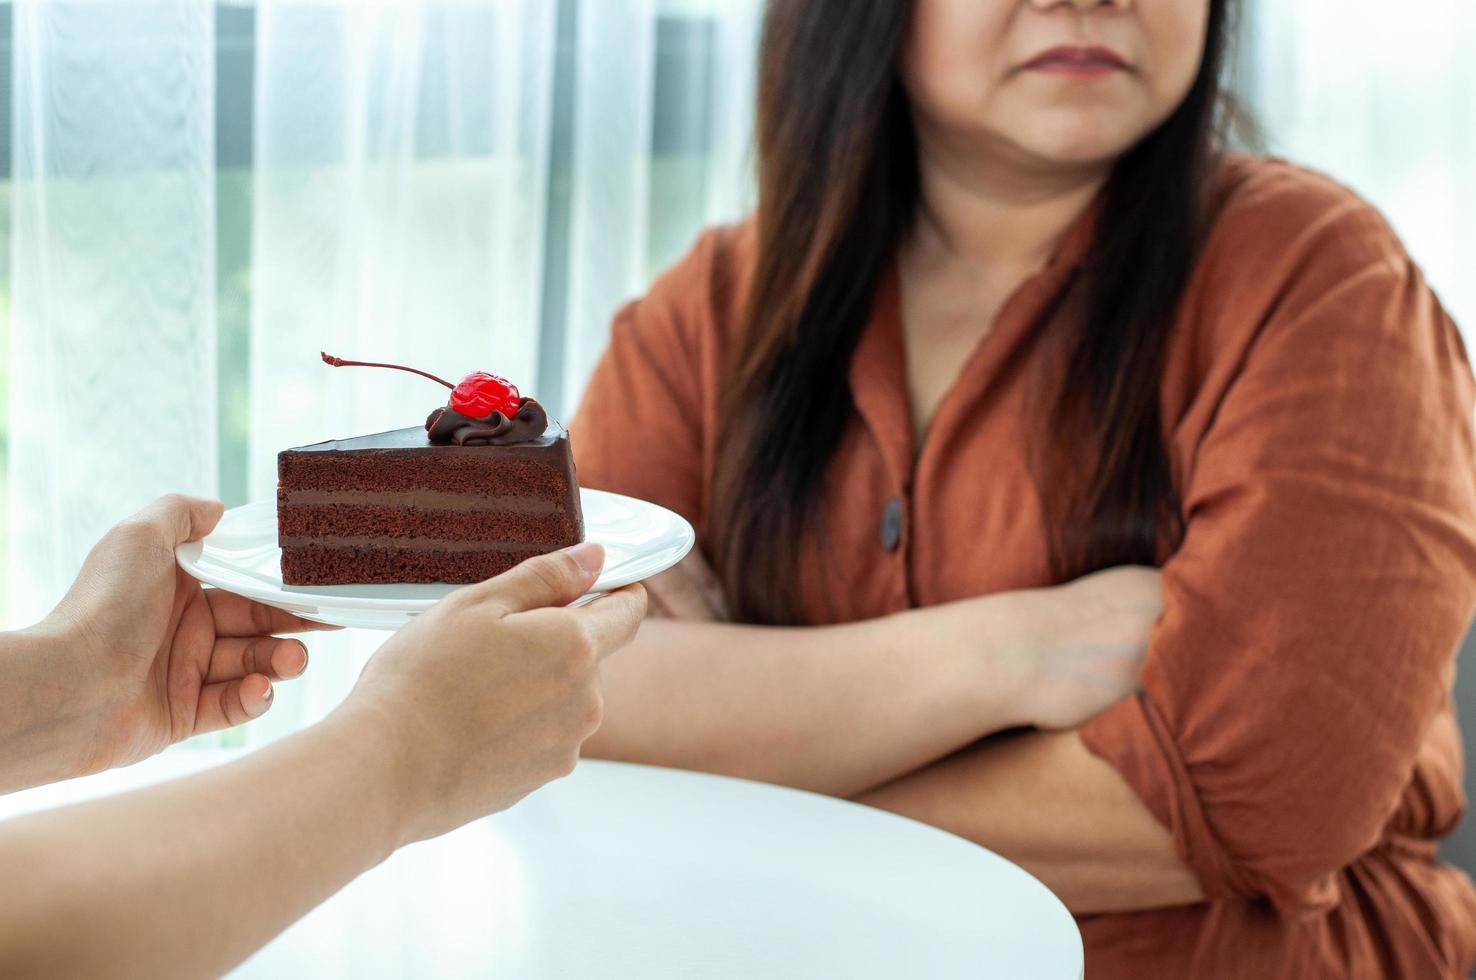 dik vrouw duwt de bord op een chocola taart. voornemen naar verliezen gewicht voor mooi zo Gezondheid en mooi zo vorm foto